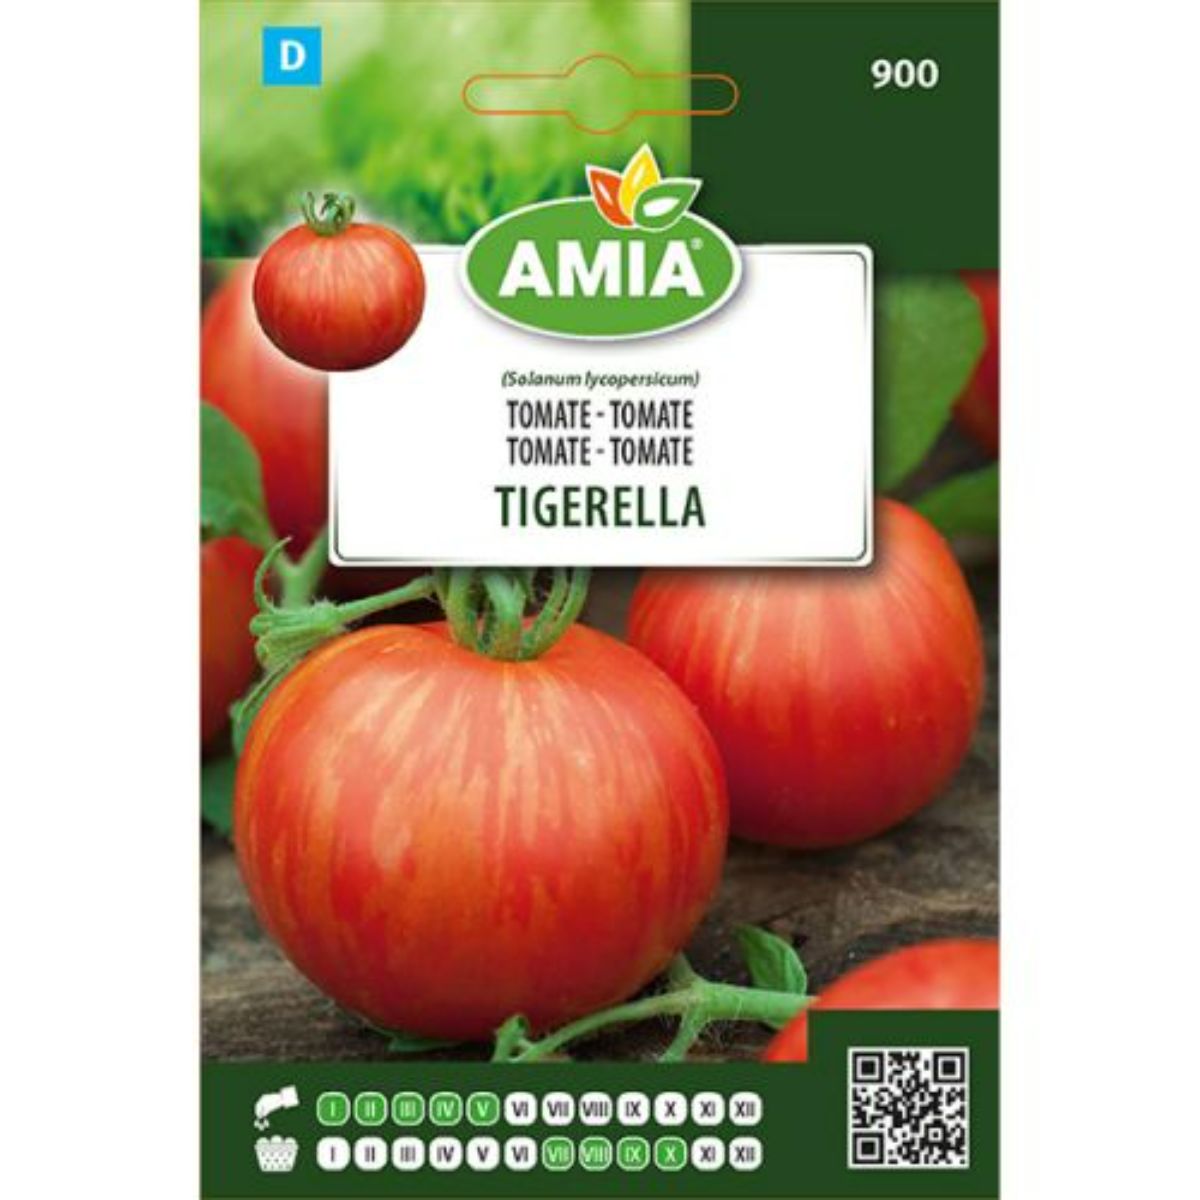 Tomate - Seminte Tomate TIGERELLA BIO AMIA 0.5gr, hectarul.ro